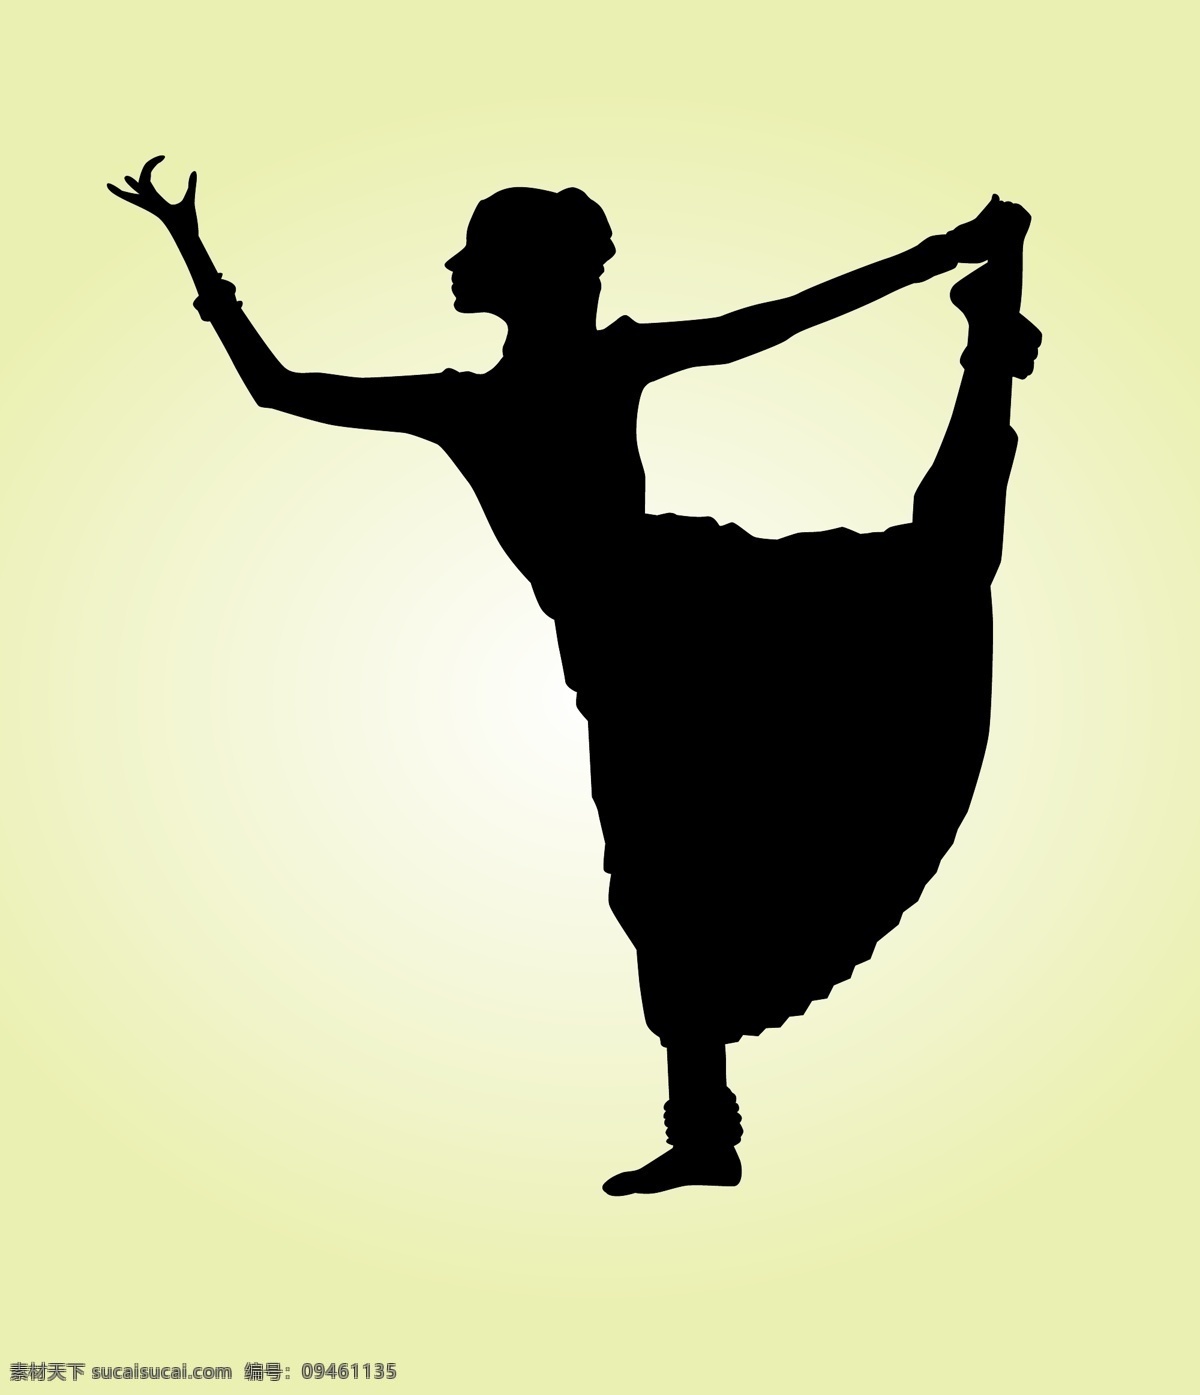 印度舞舞者 人 舞蹈 印度 服饰 经典 民族 女性 文化 舞蹈演员 亚洲 传统 腿 舞者 升降 姿态 纱丽 白色